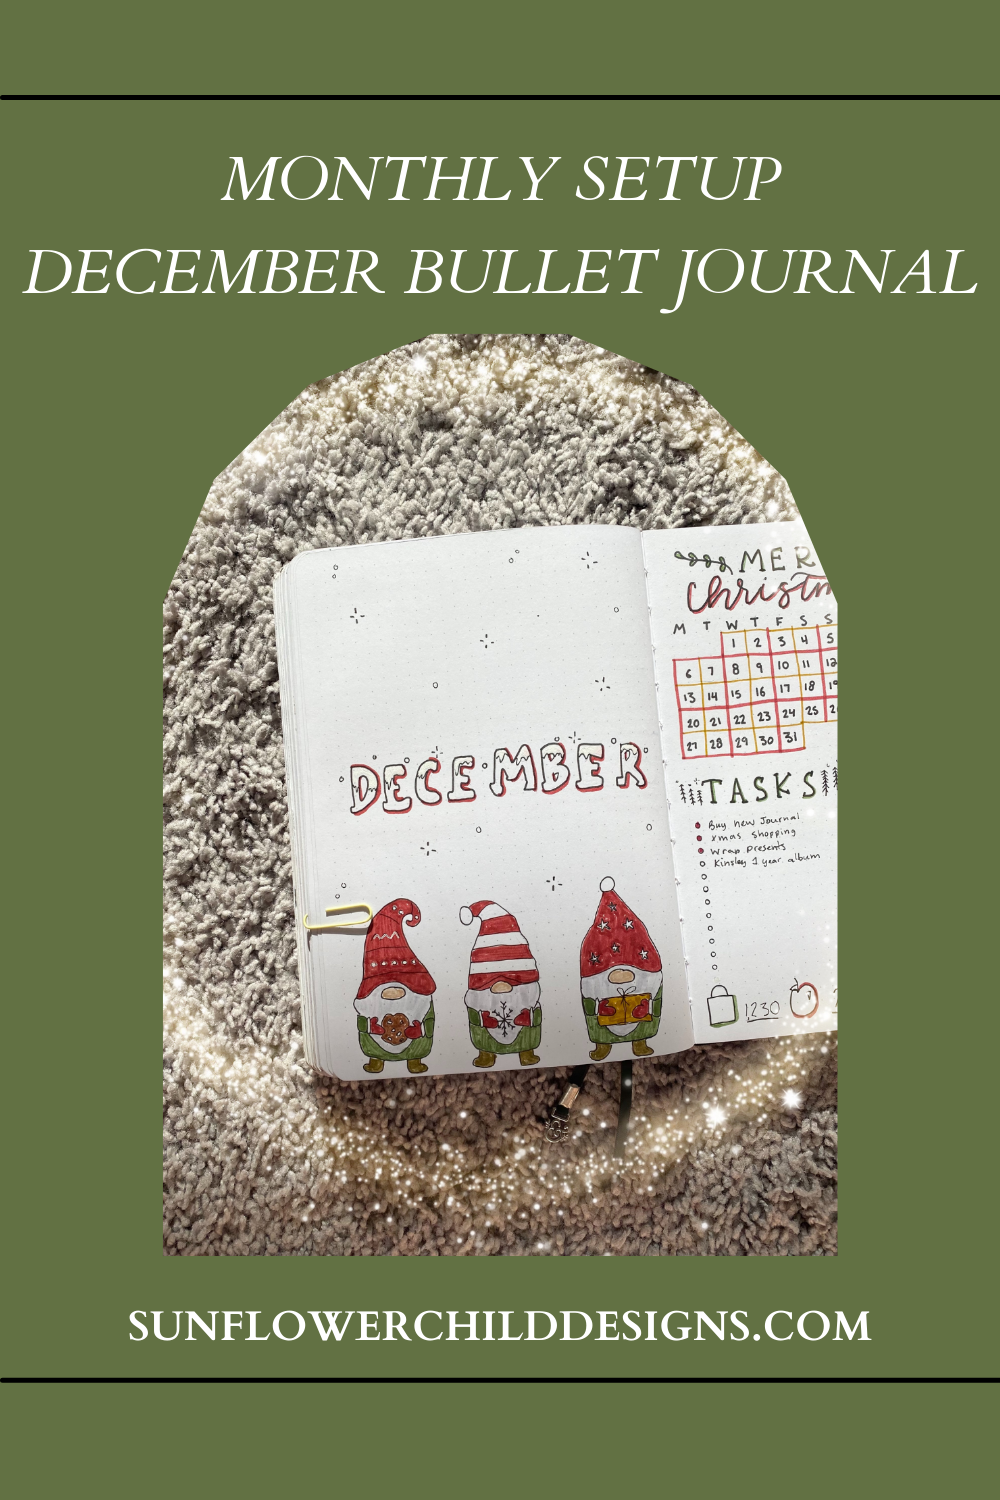 December-bullet-journal-ideas-10.png